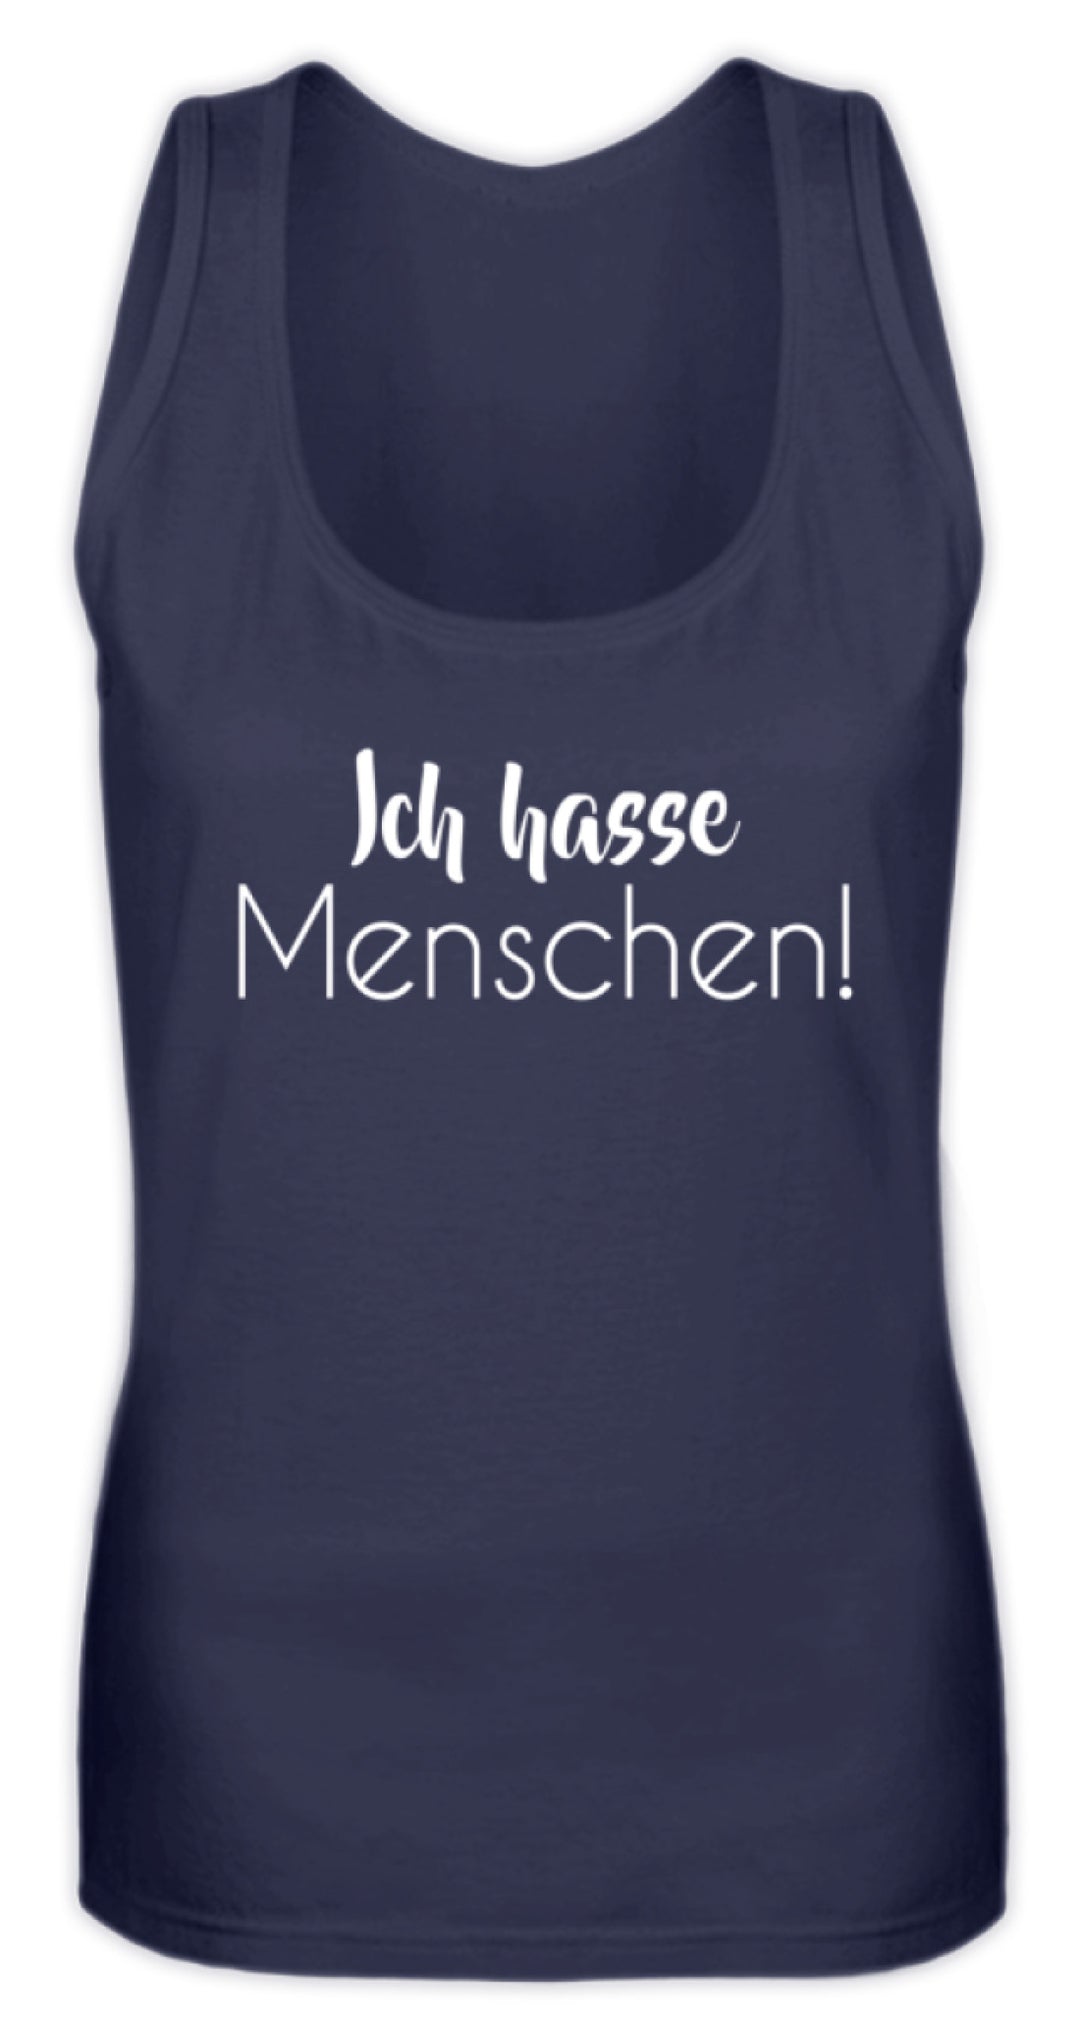 Ich hasse Menschen - Girls only  - Frauen Tanktop - Words on Shirts